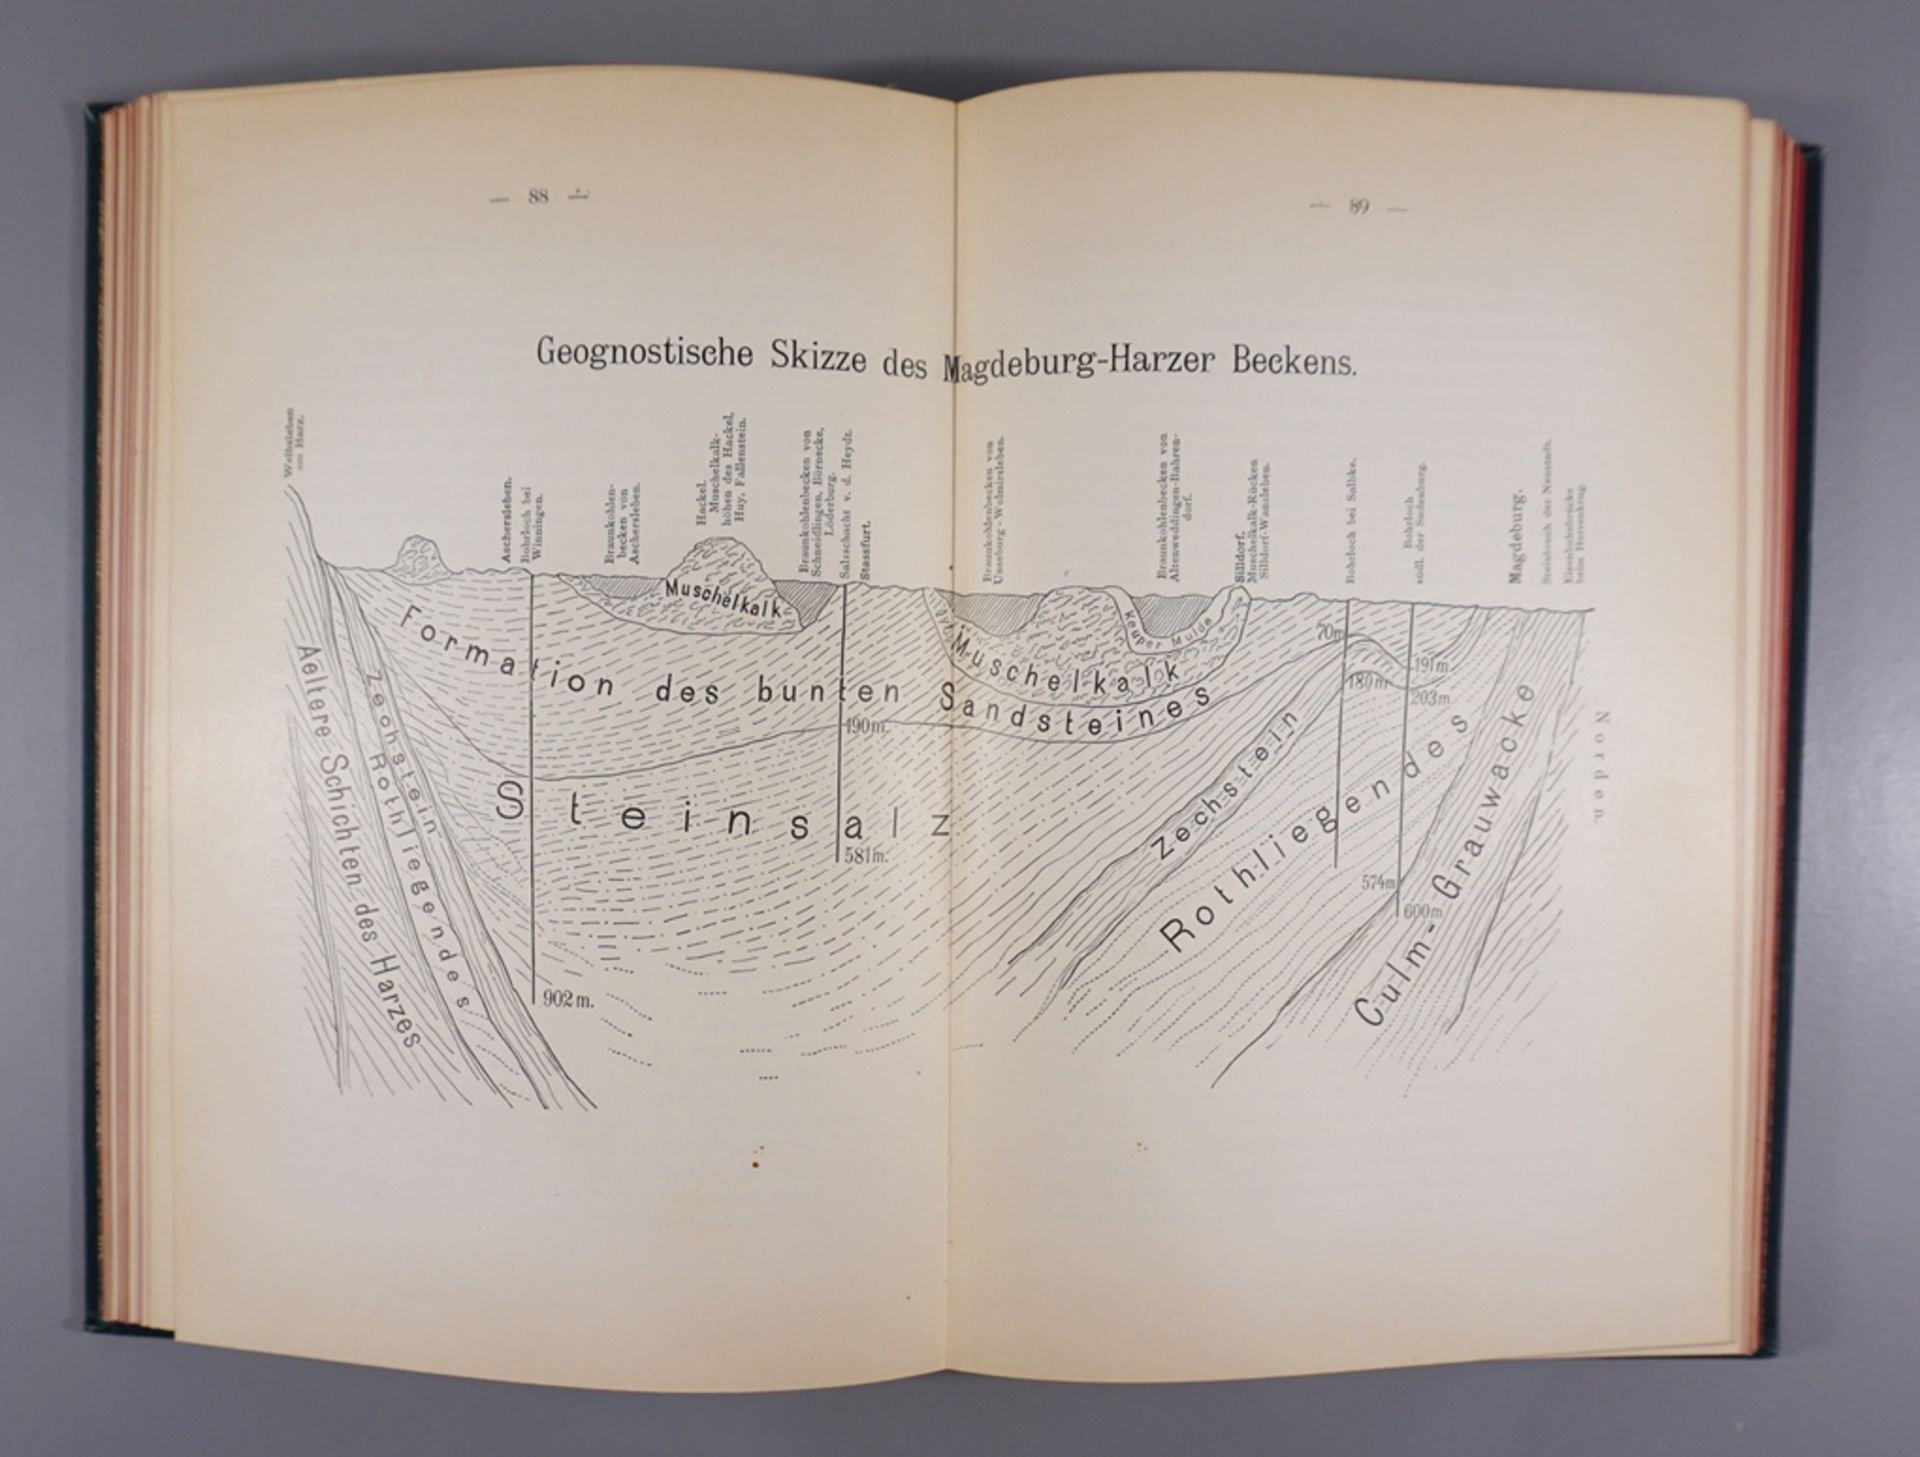 Festschrift "57.Versammlung Deutscher Naturforscher und Aerzte", Magdeburg, 1884 - Bild 3 aus 4